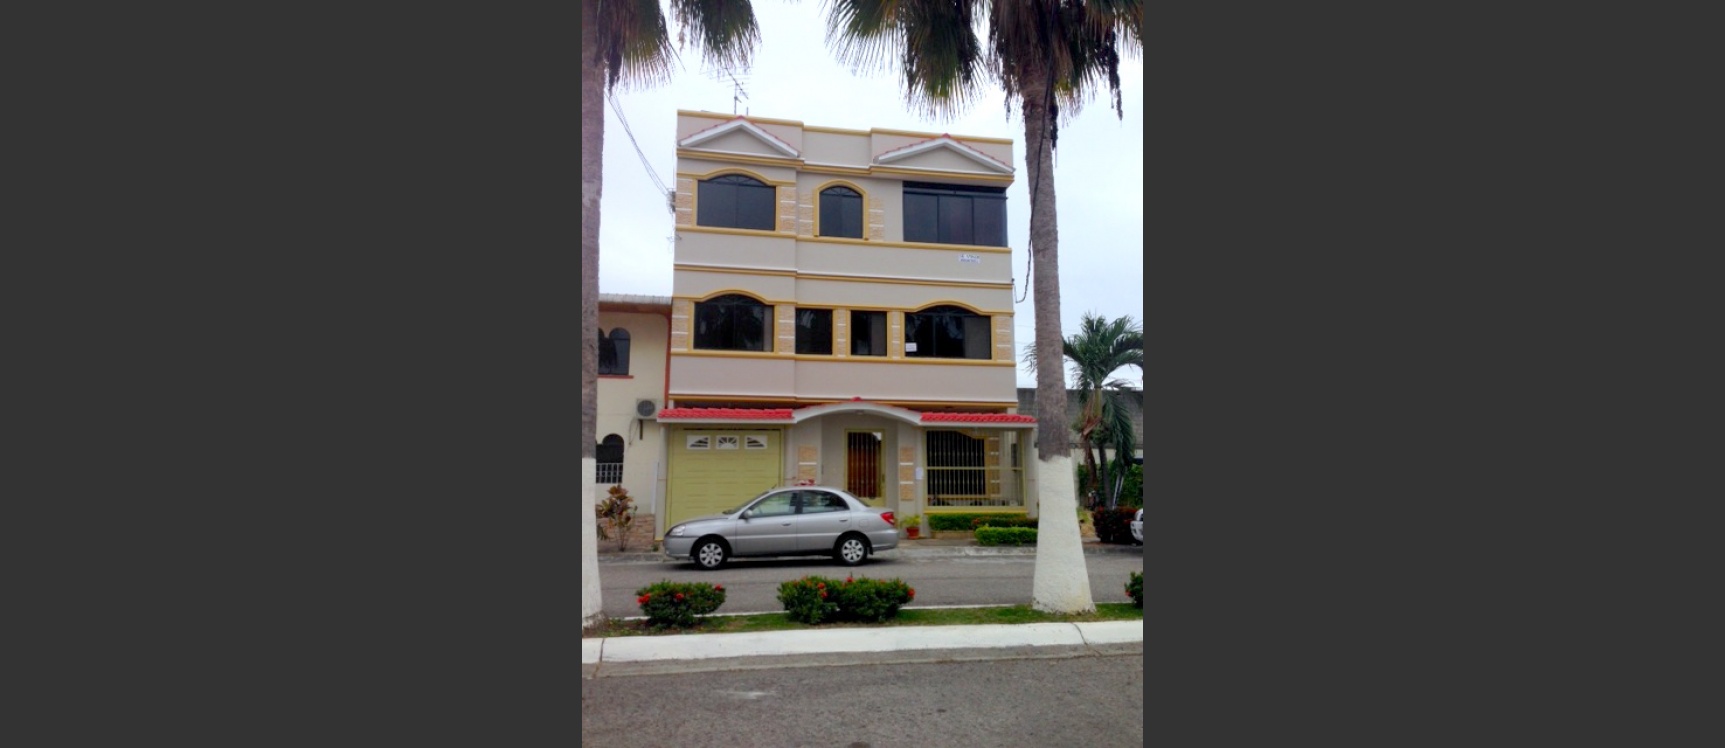 GeoBienes - Casa en venta en Urb. Girasoles Guayaquil - Plusvalia Guayaquil Casas de venta y alquiler Inmobiliaria Ecuador